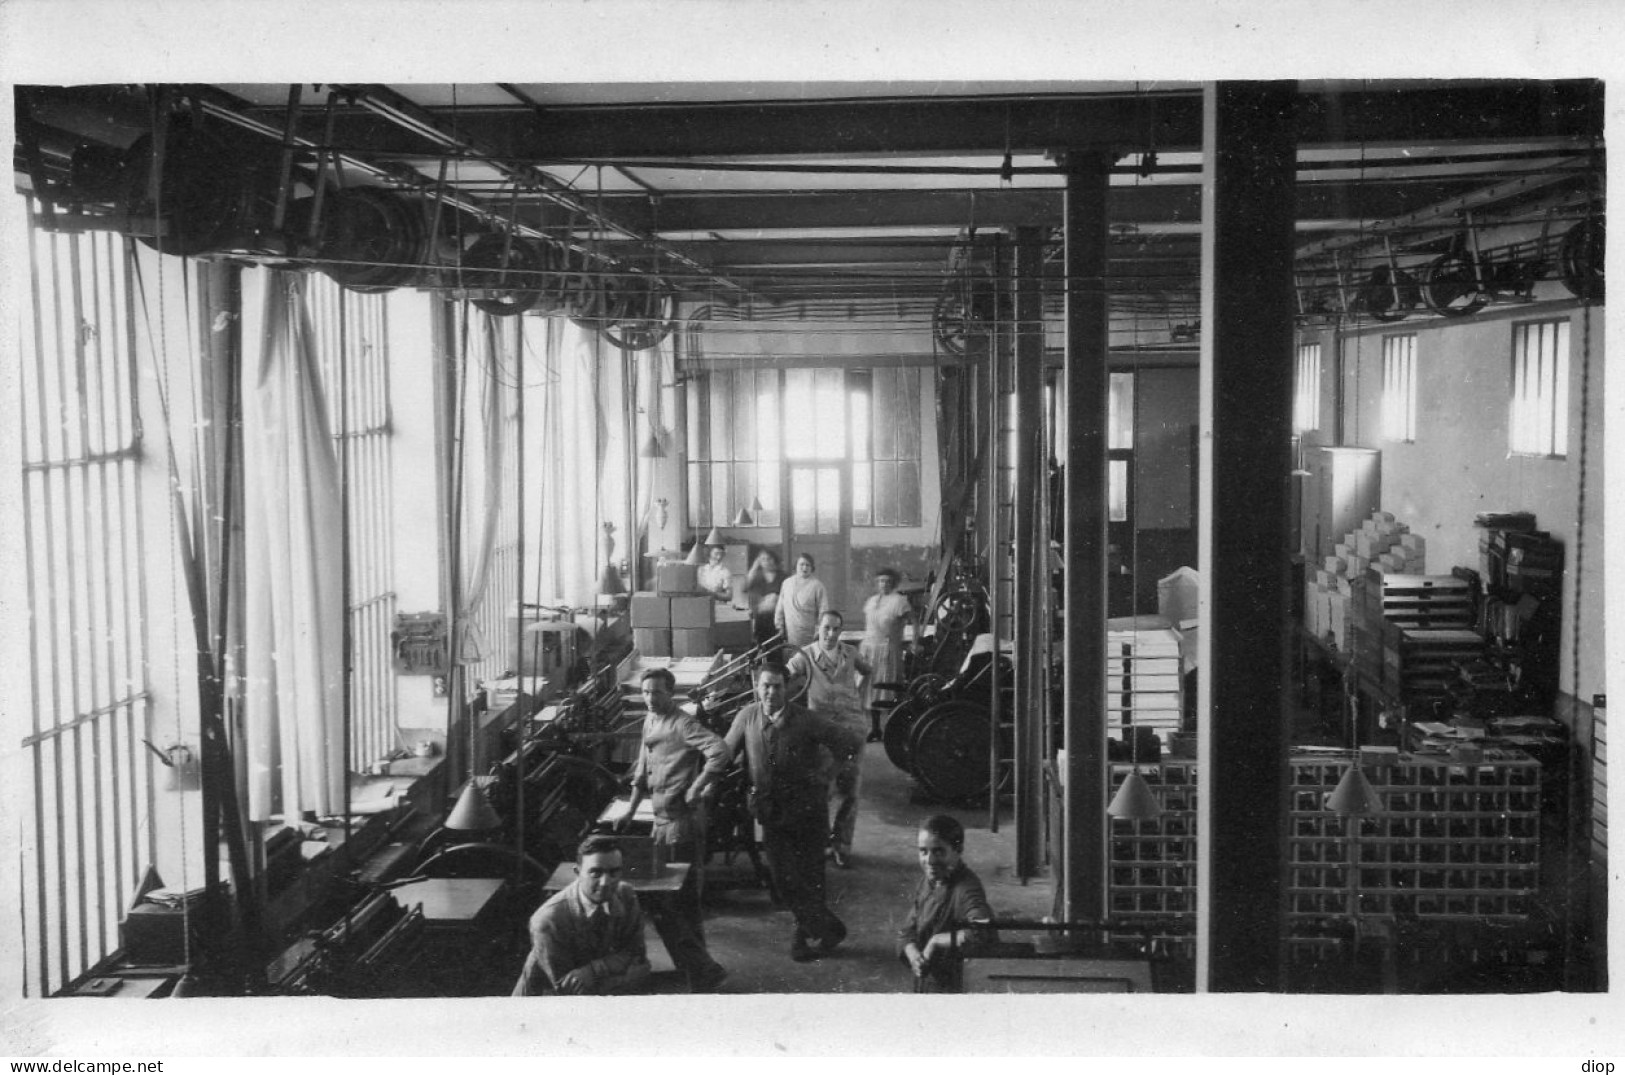 Photo Vintage Paris Snap Shop -homme Men Atelier Travail Work - Métiers